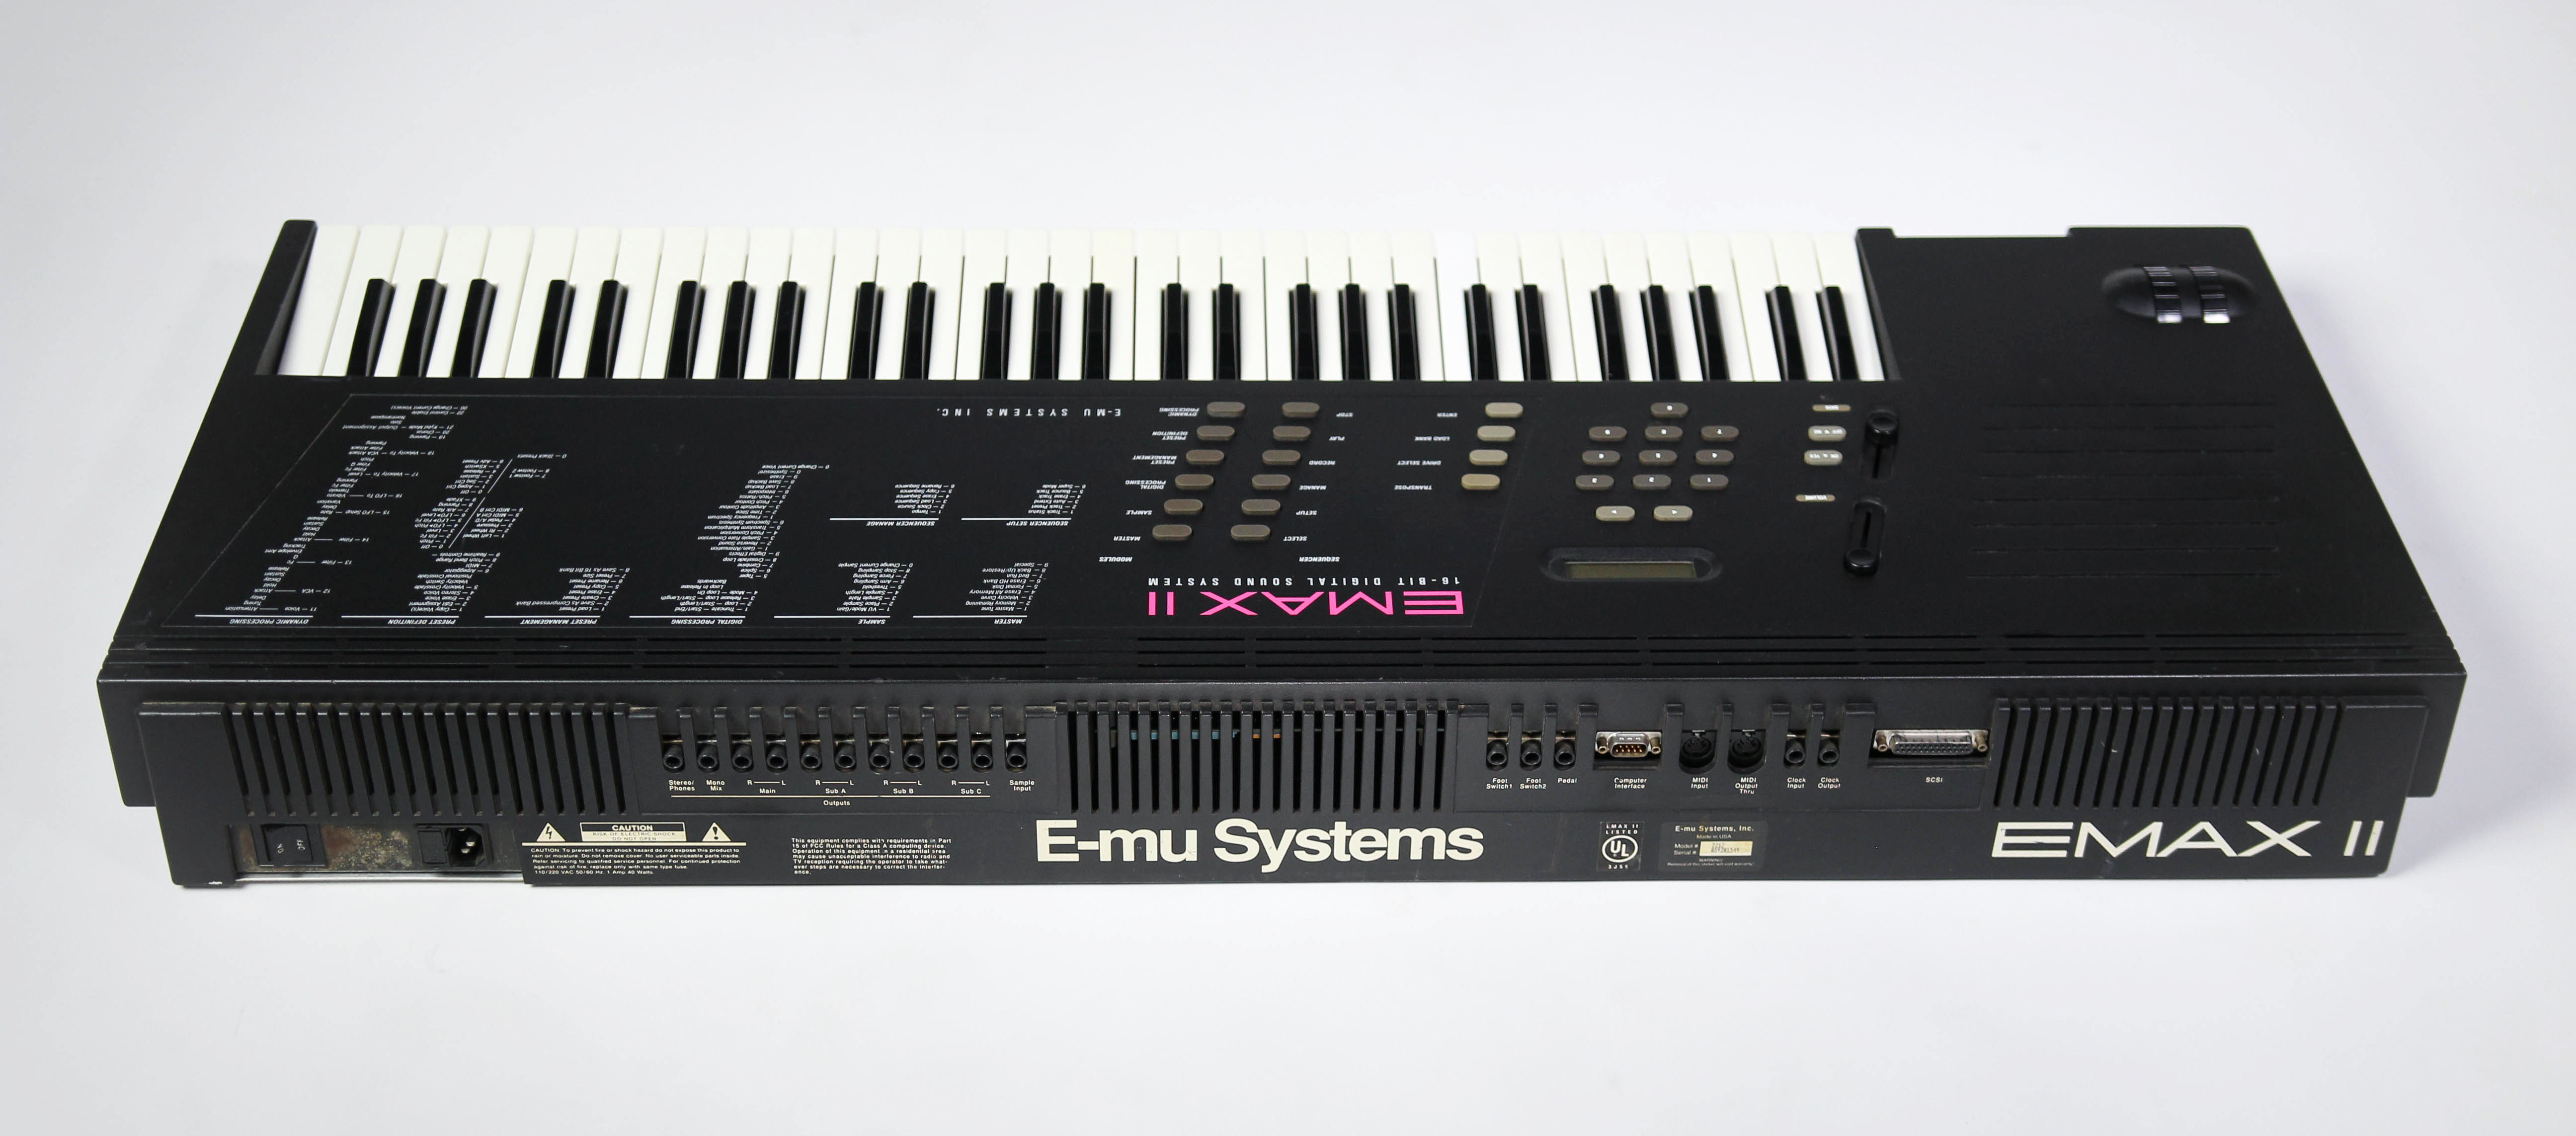 E-mu Emax II keyboard